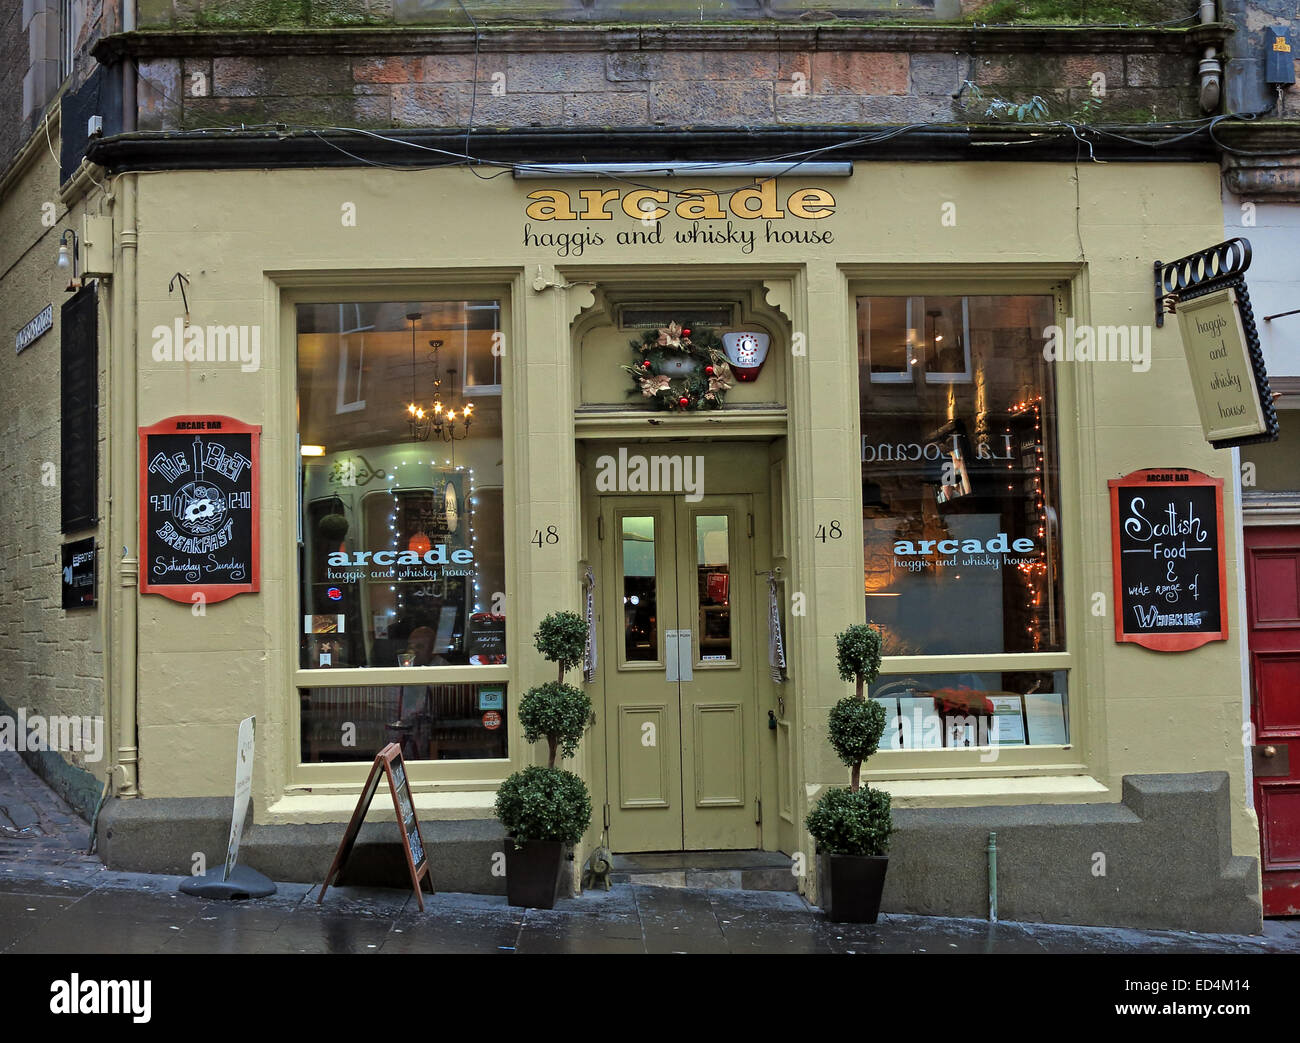 Arcade & Haggis Édimbourg, Écosse Maison du Whisky,UK Banque D'Images